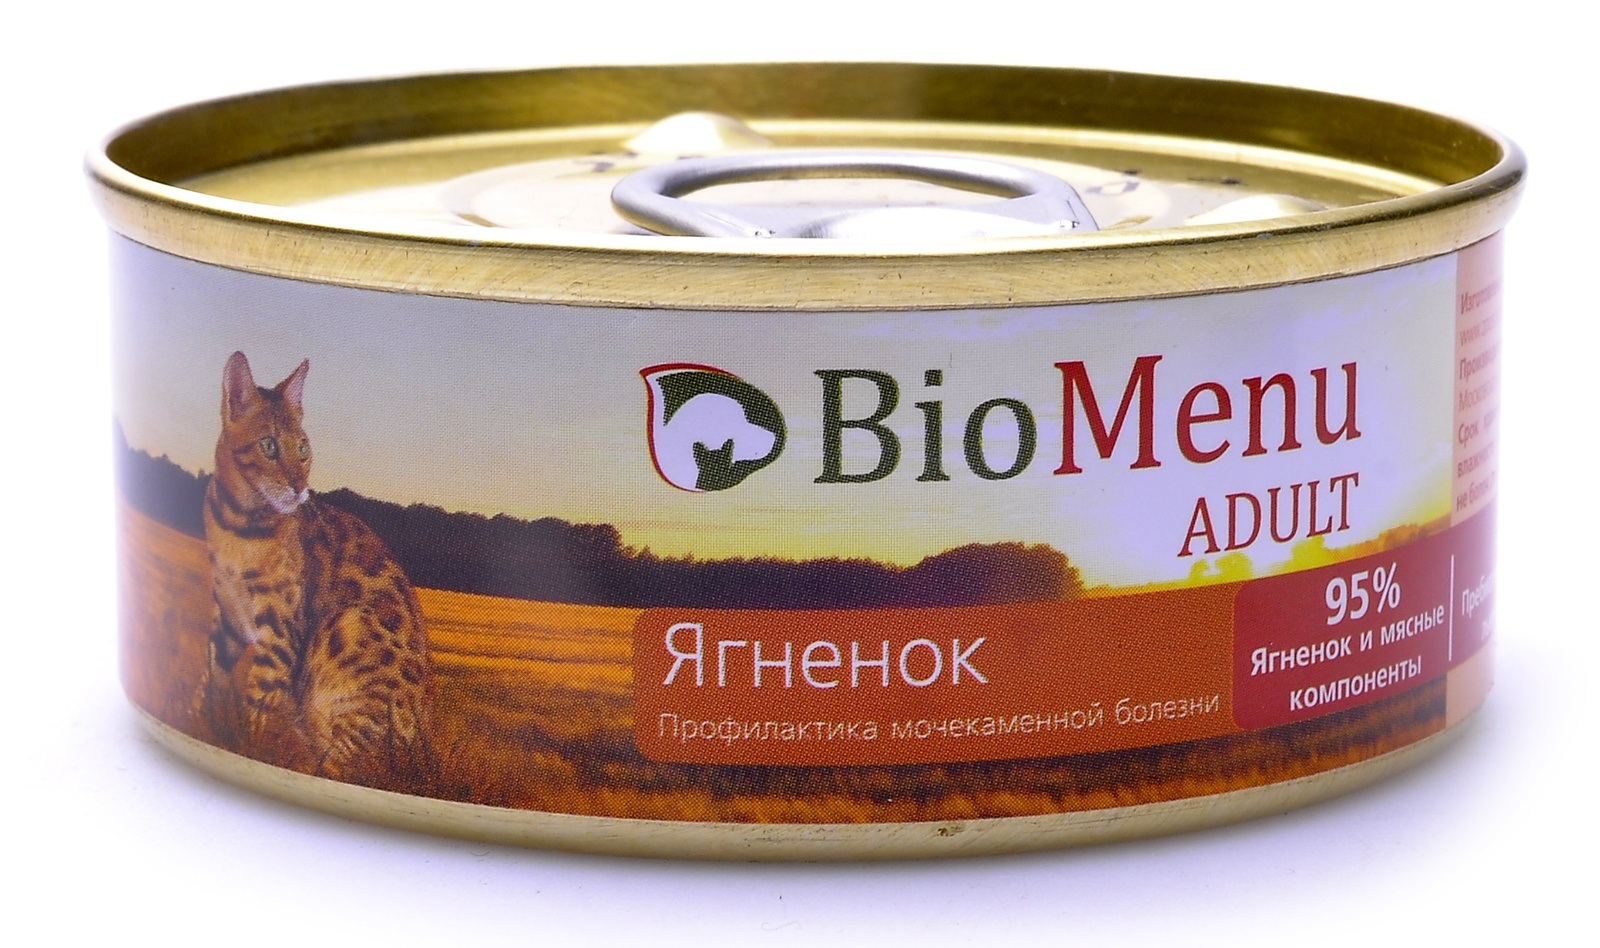 BioMenu BioMenu паштет для кошек с ягненком (100 г) консервы biomenu adult для кошек мясной паштет с языком 95% мясо 100 г